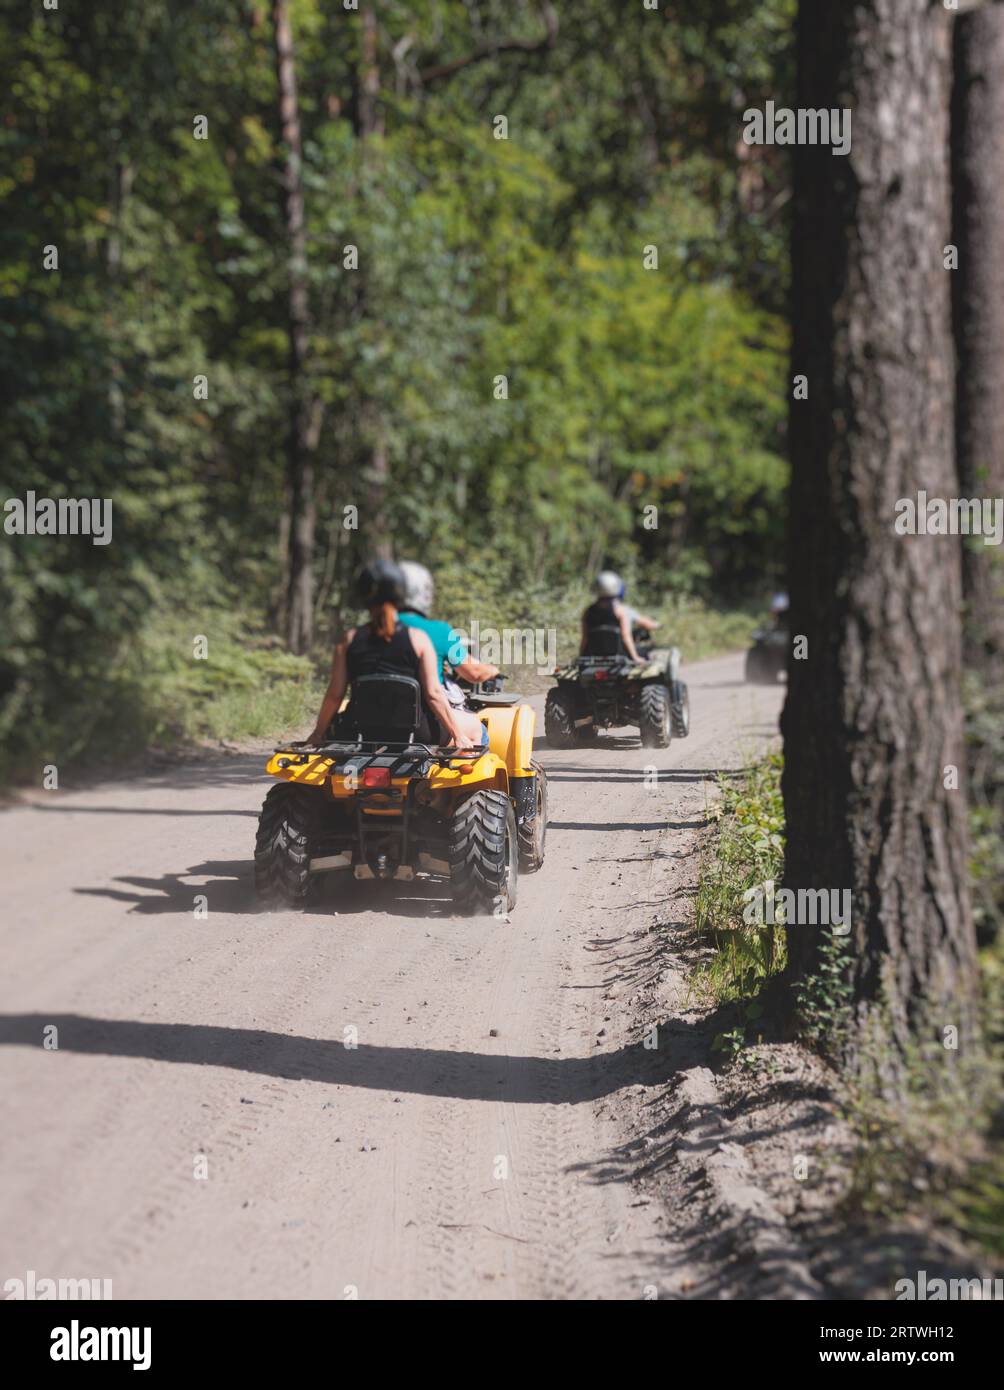 Grupo de jinetes que montan vehículo de ATV que cruzan la carretera rural del bosque, proceso de conducir un vehículo de alquiler, todo terreno vehículo de la bici quad, durante tou tou fuera de la carretera Foto de stock